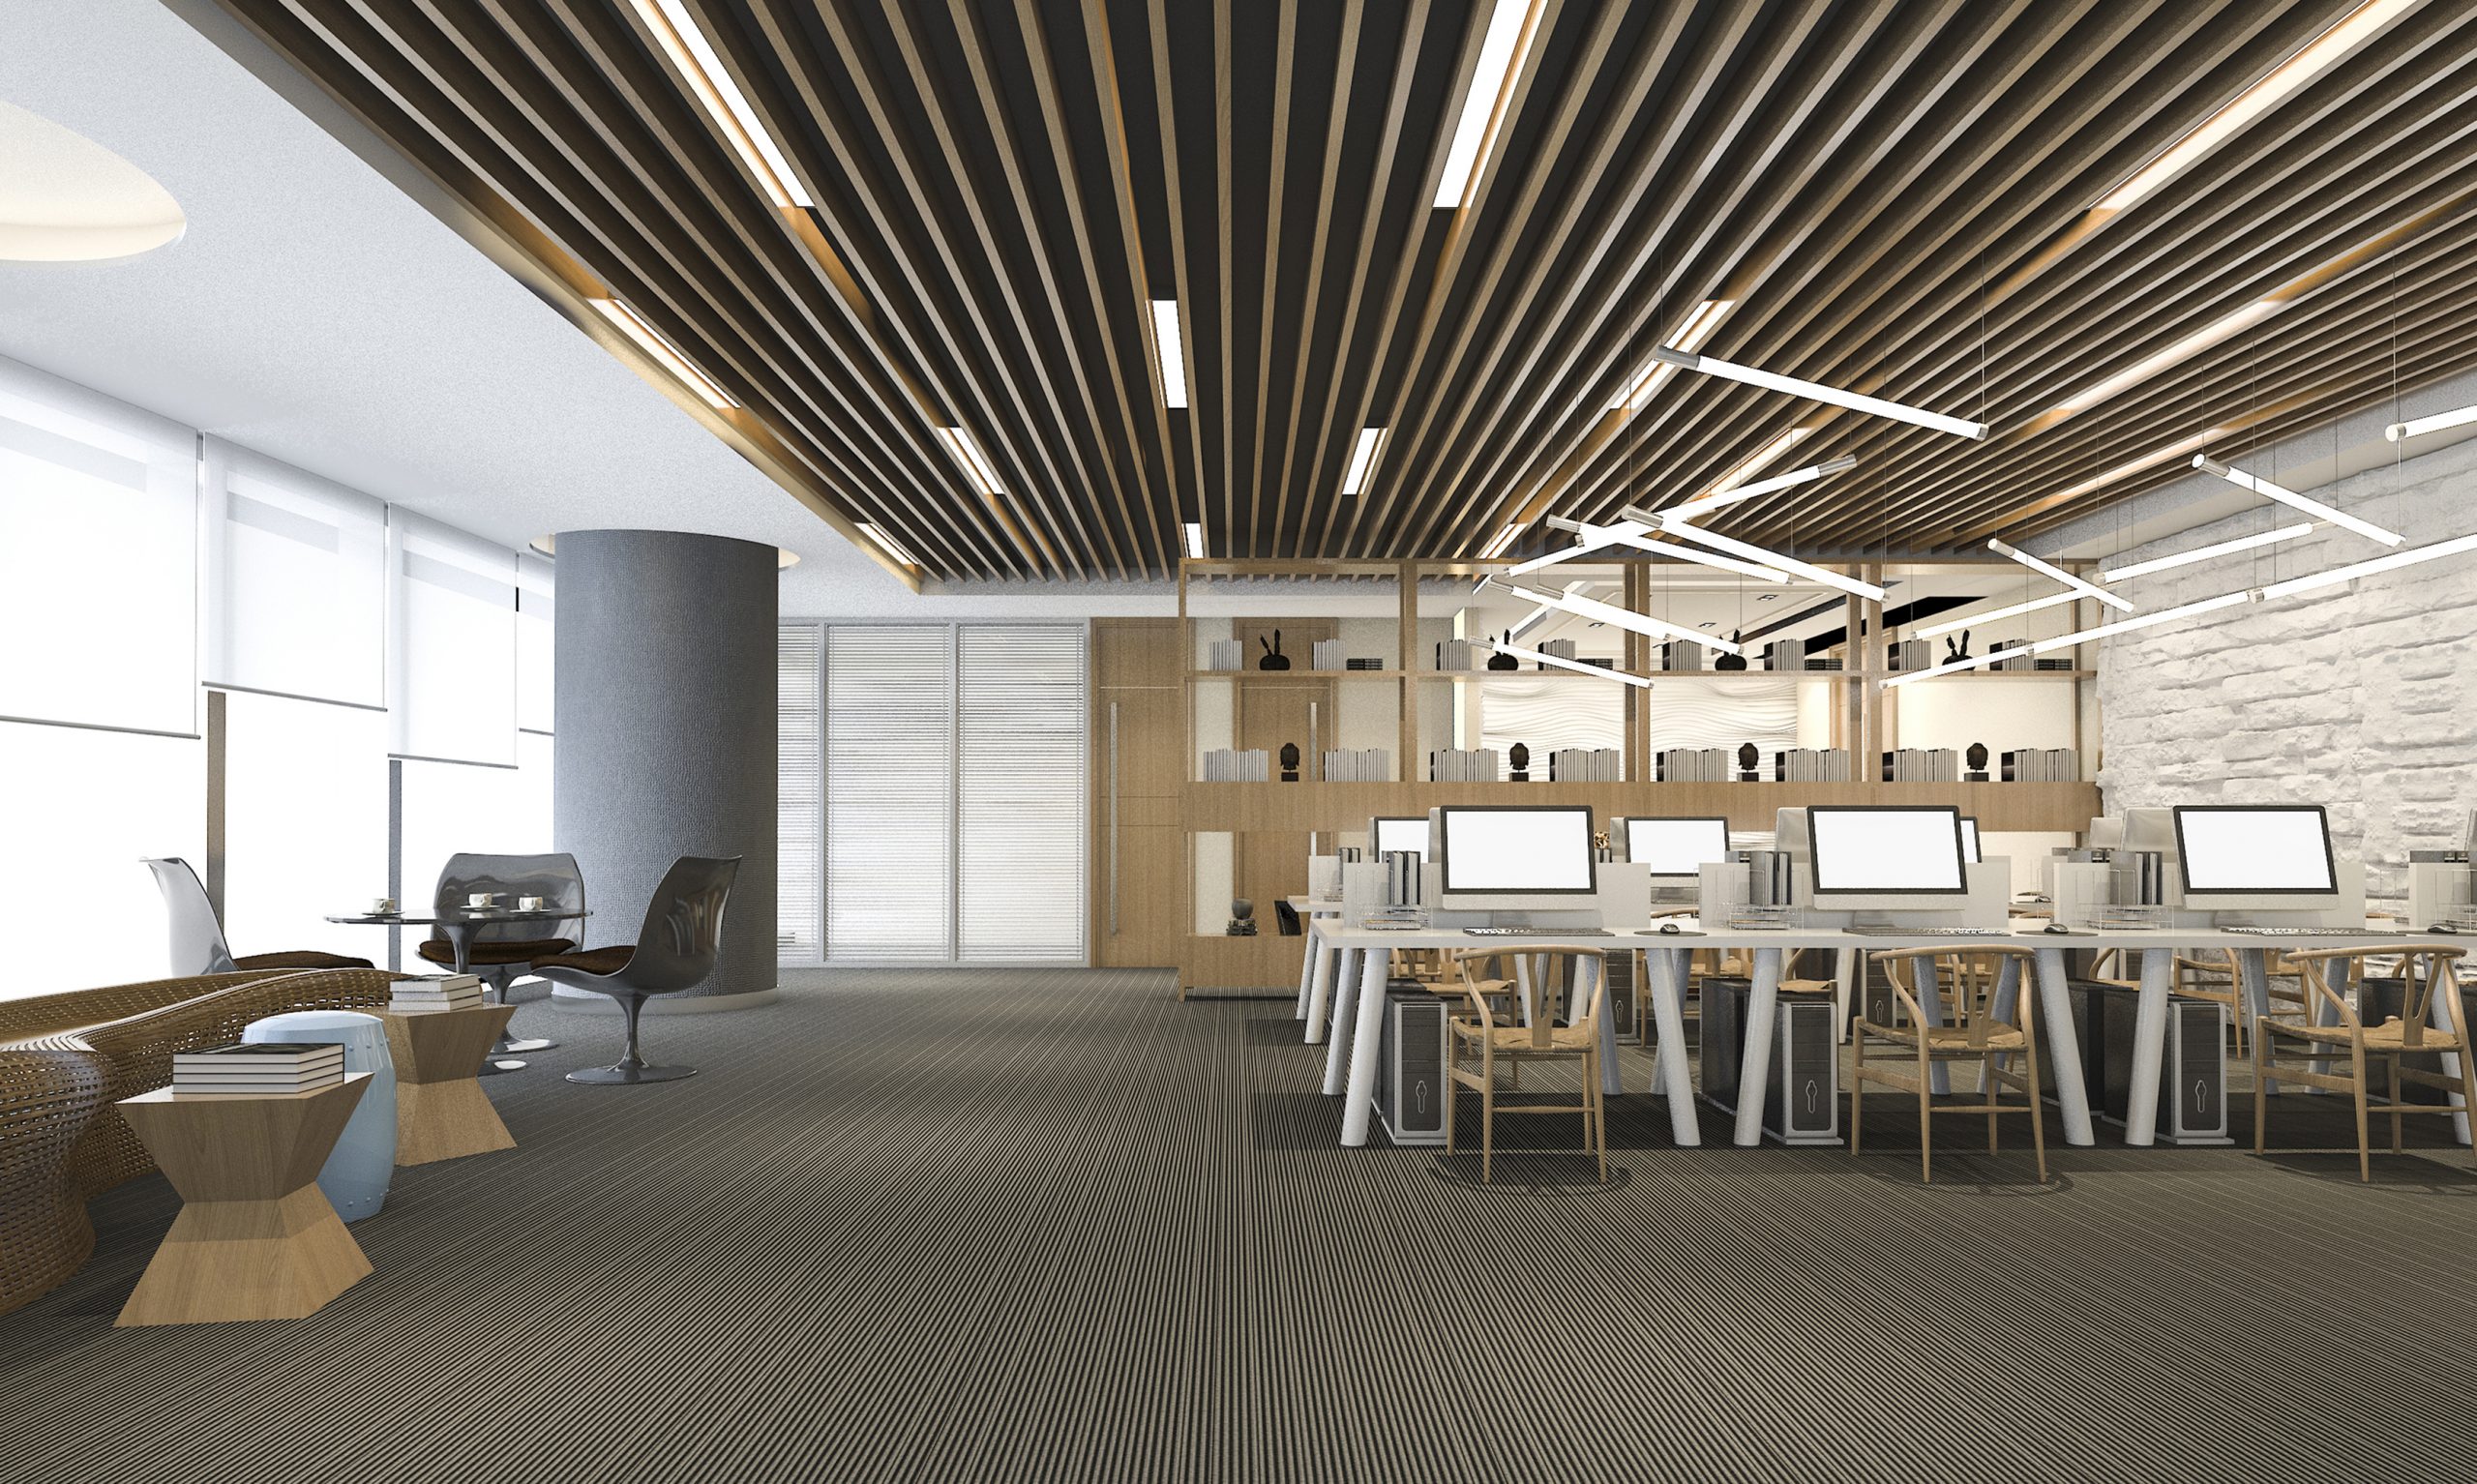 Et moderne kontor mer en åpen planløsning med hvite murvegger og eksponert treverk i taket og i møblene, interiørdesign for kontor